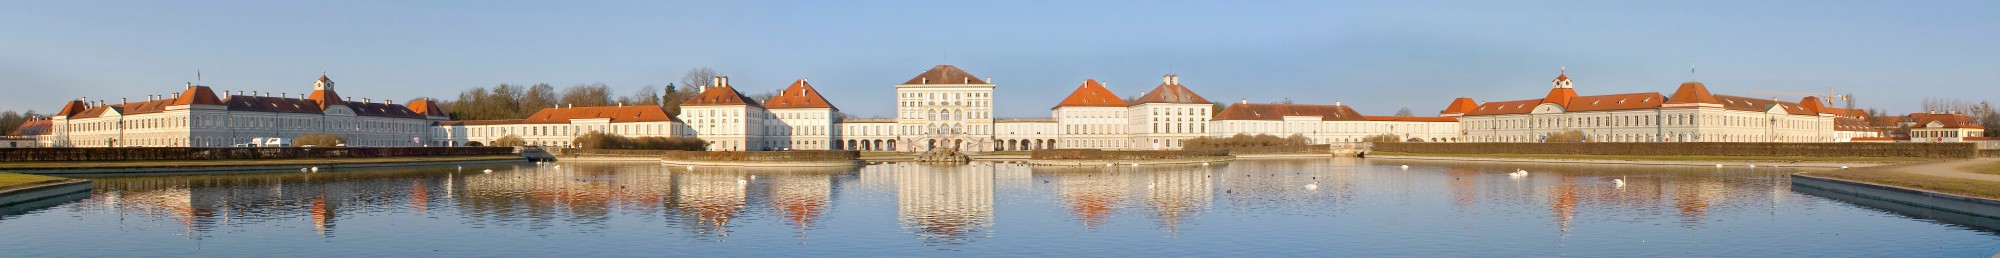 Panorámica del exterior del Palacio de Nymphenburg, Múnich, Alemania